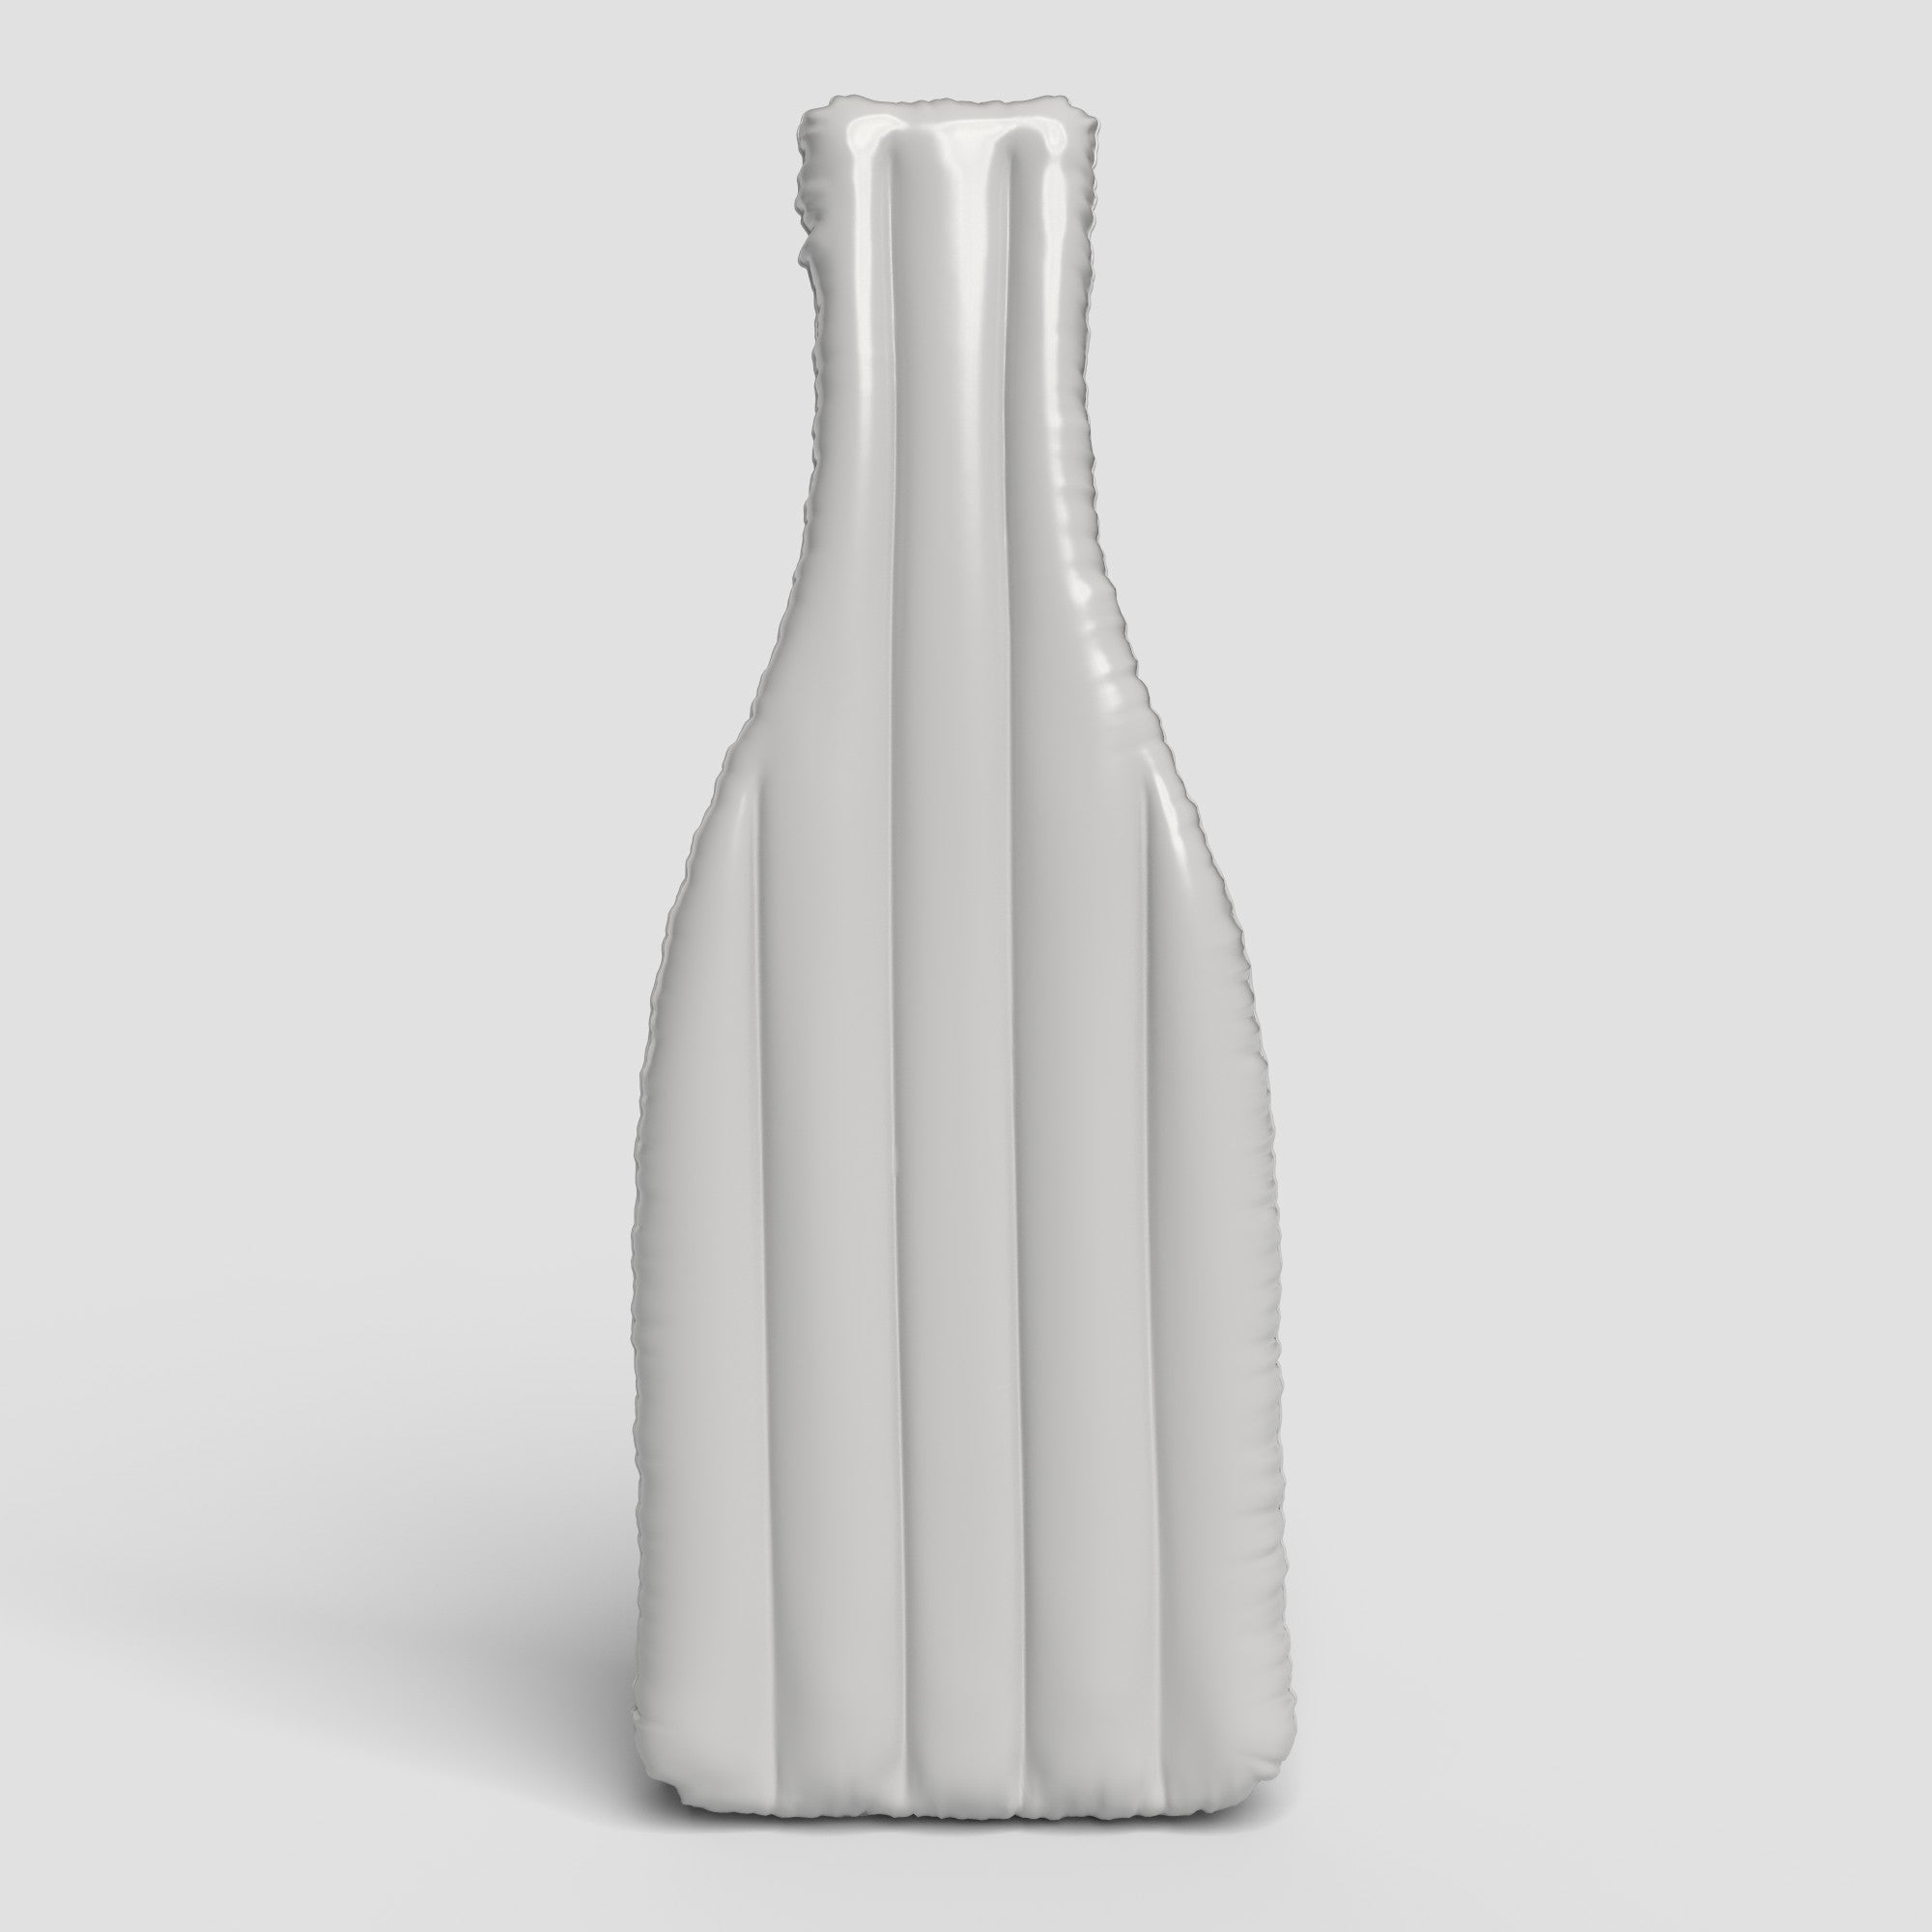 Inflatable Wine Bottle Floatie Art Template Download